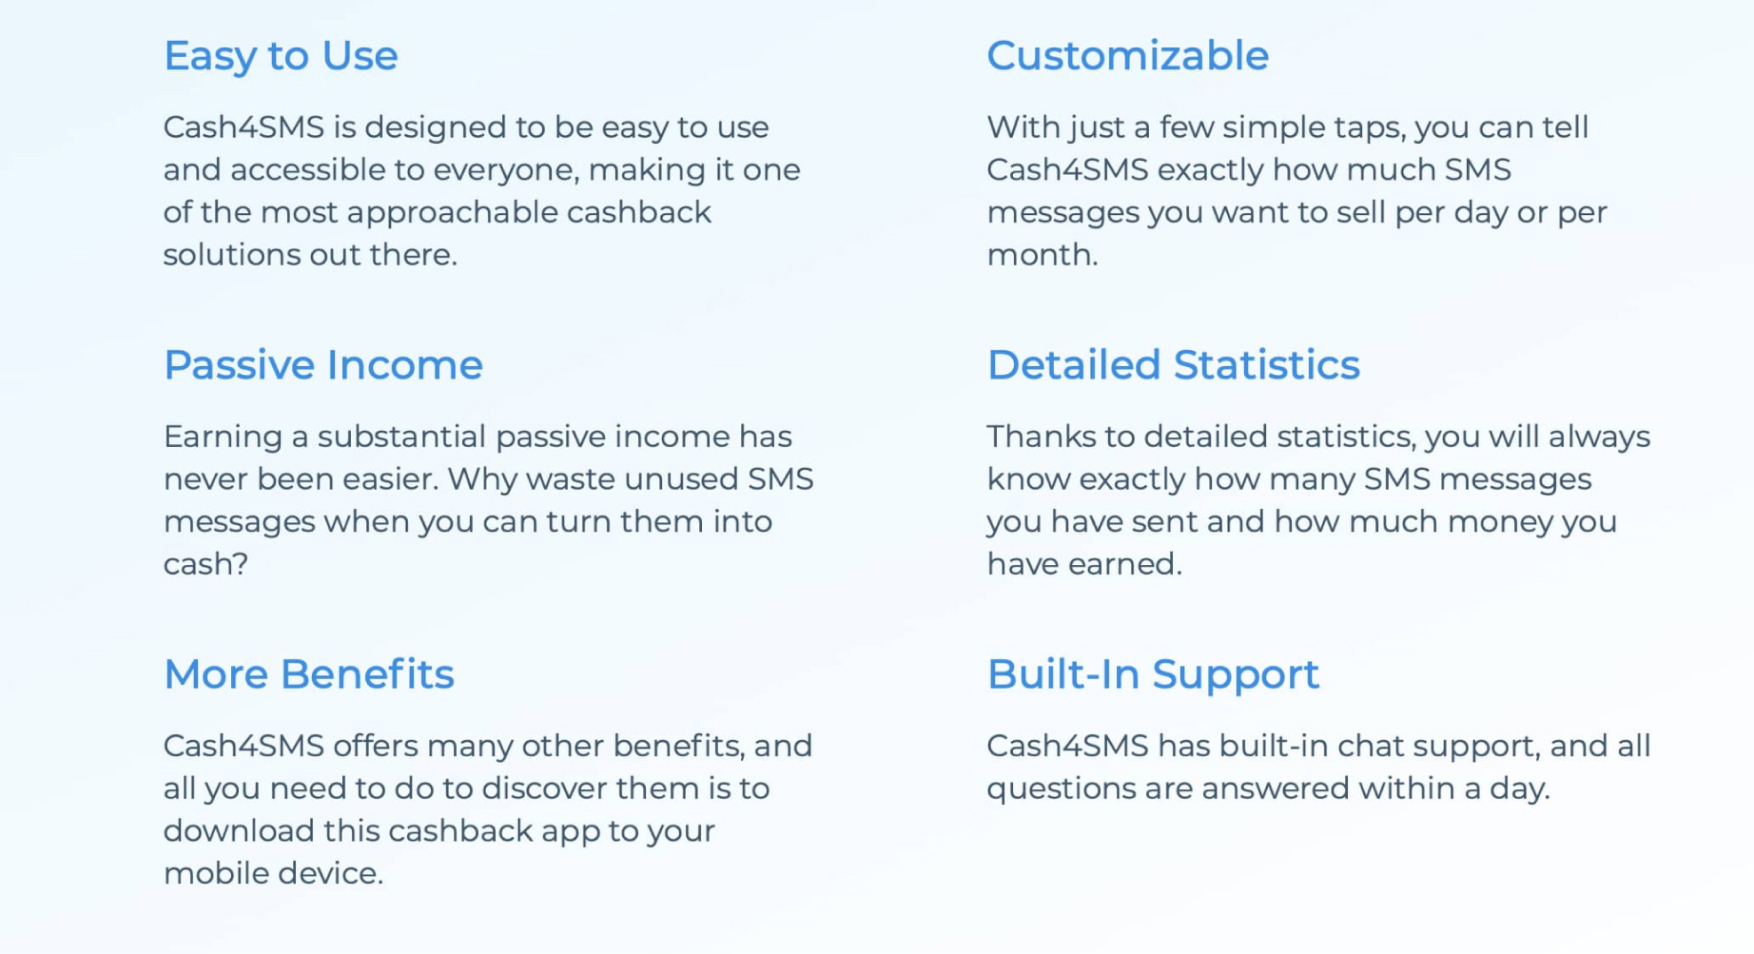 Cash4SMS app’s features